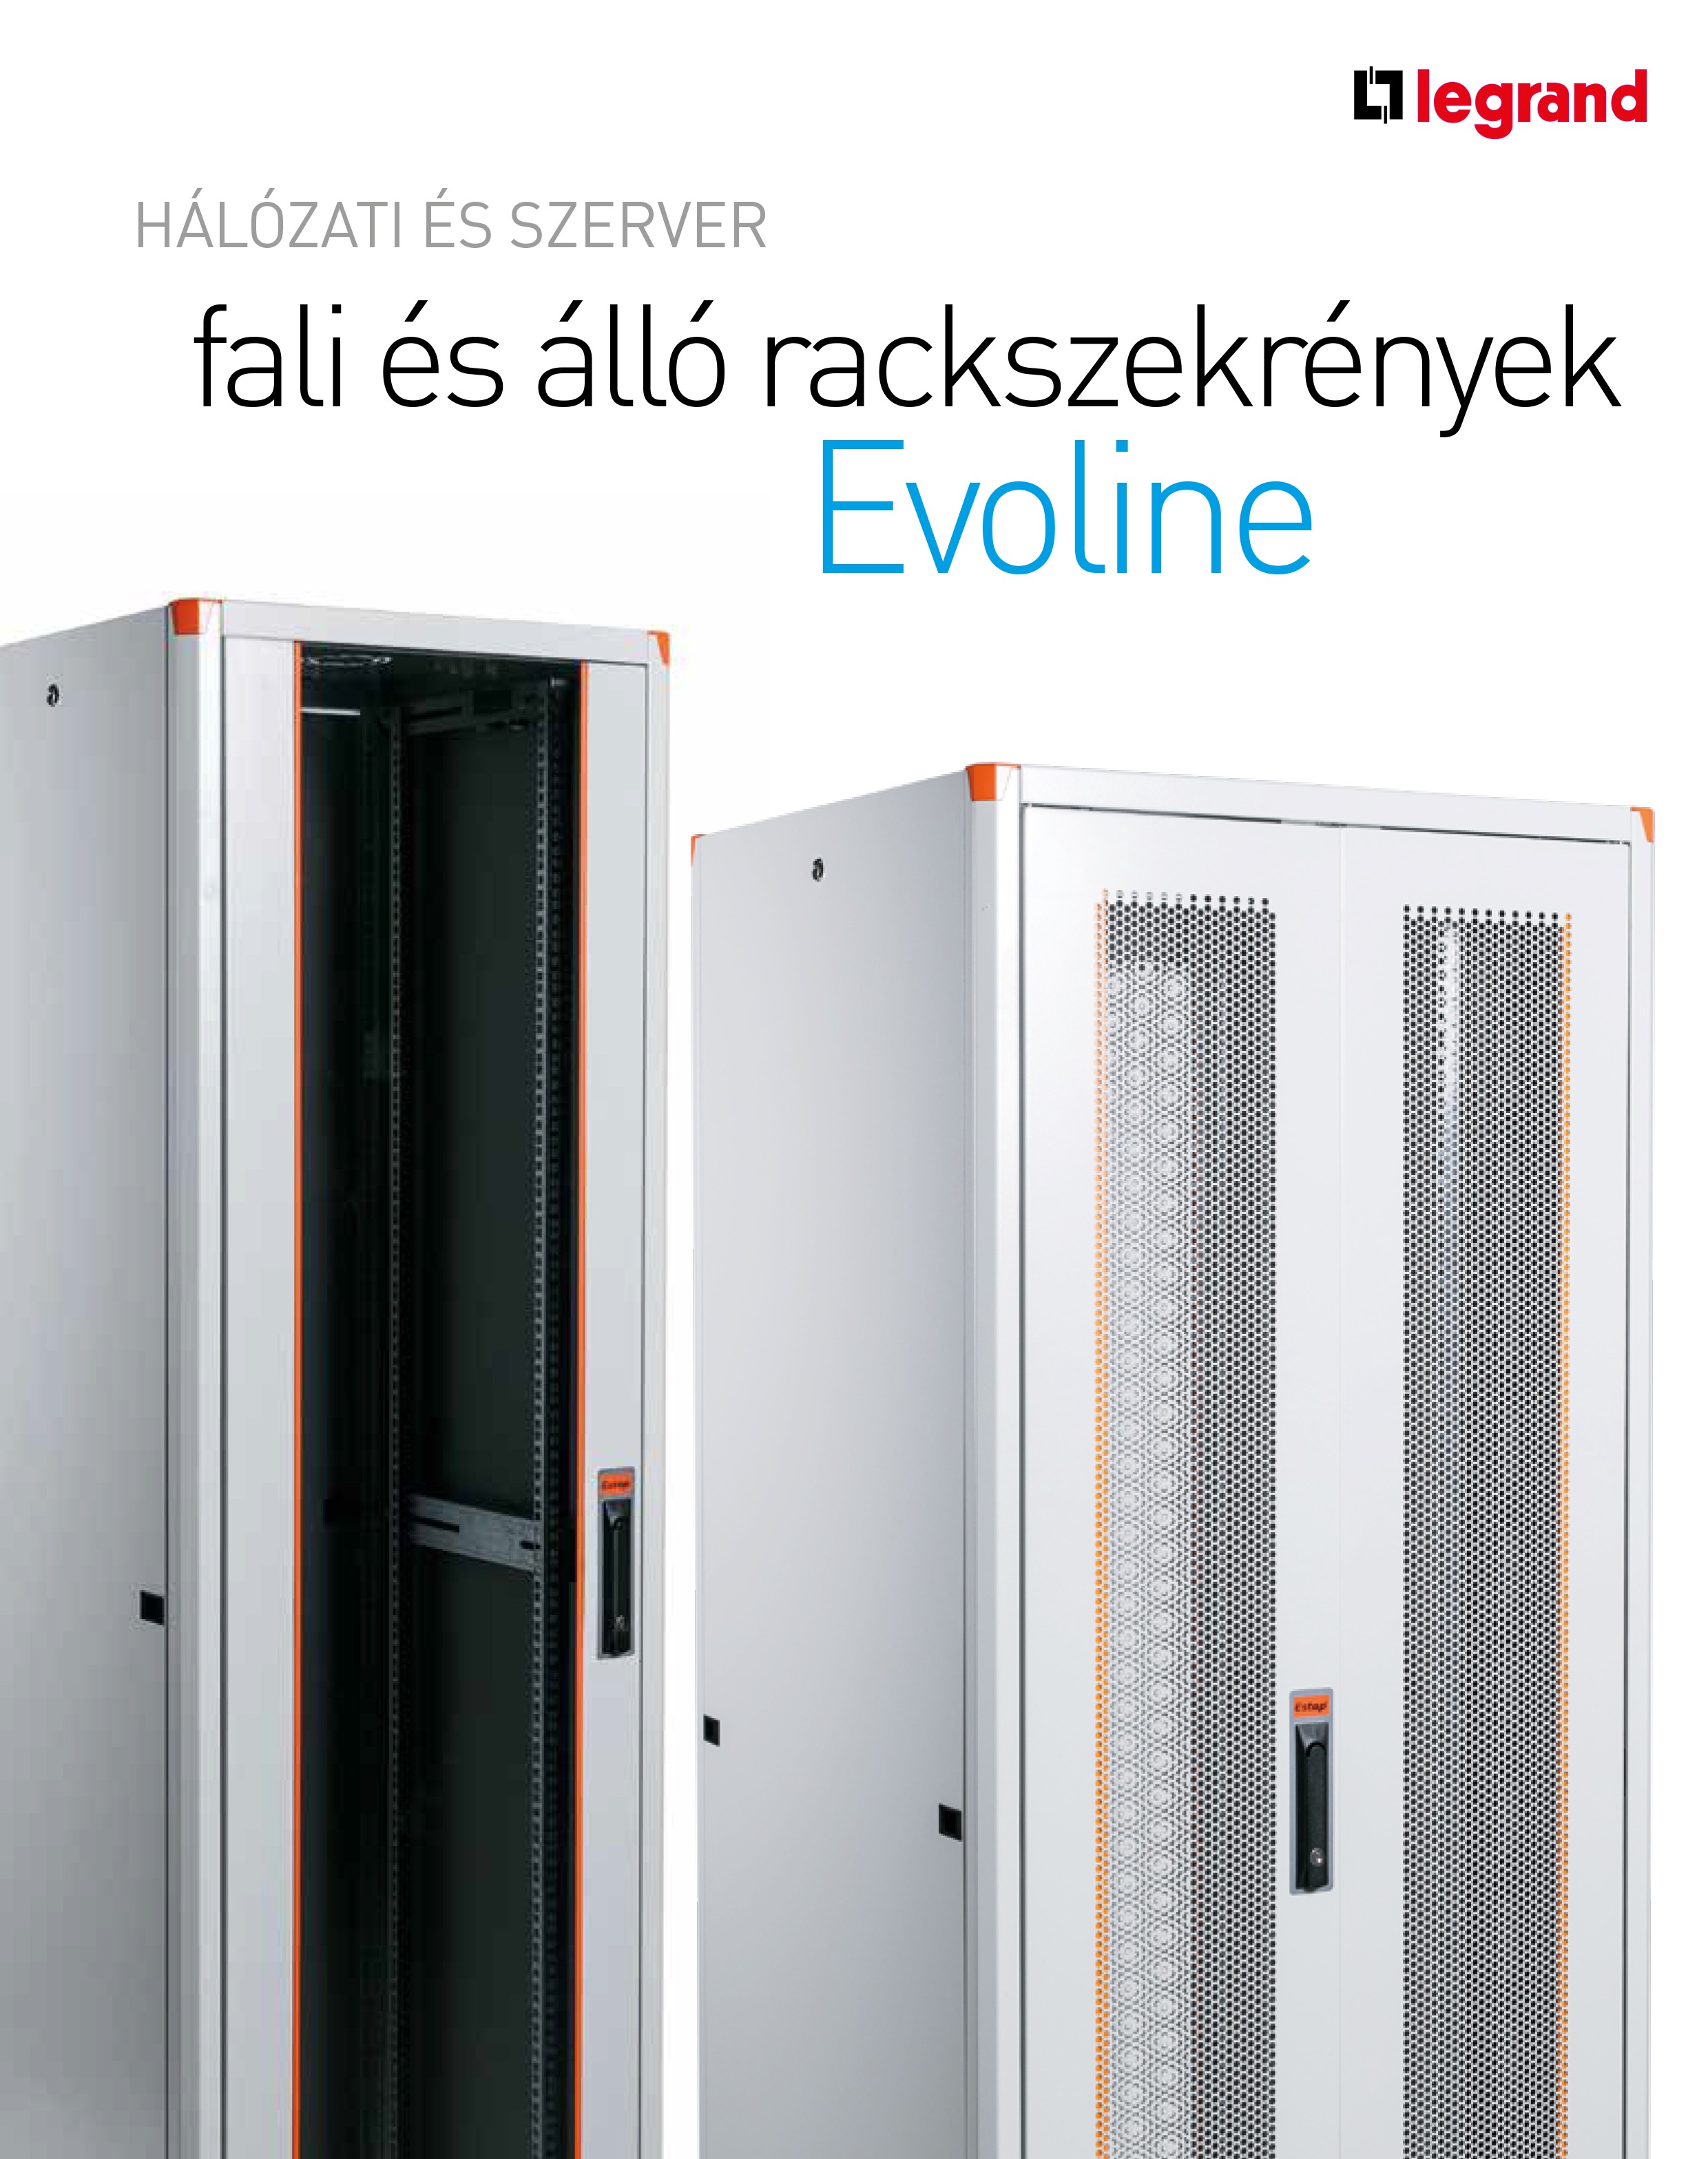 Új hálózati / szerver rack szekrények a Legrandtól: Evoline